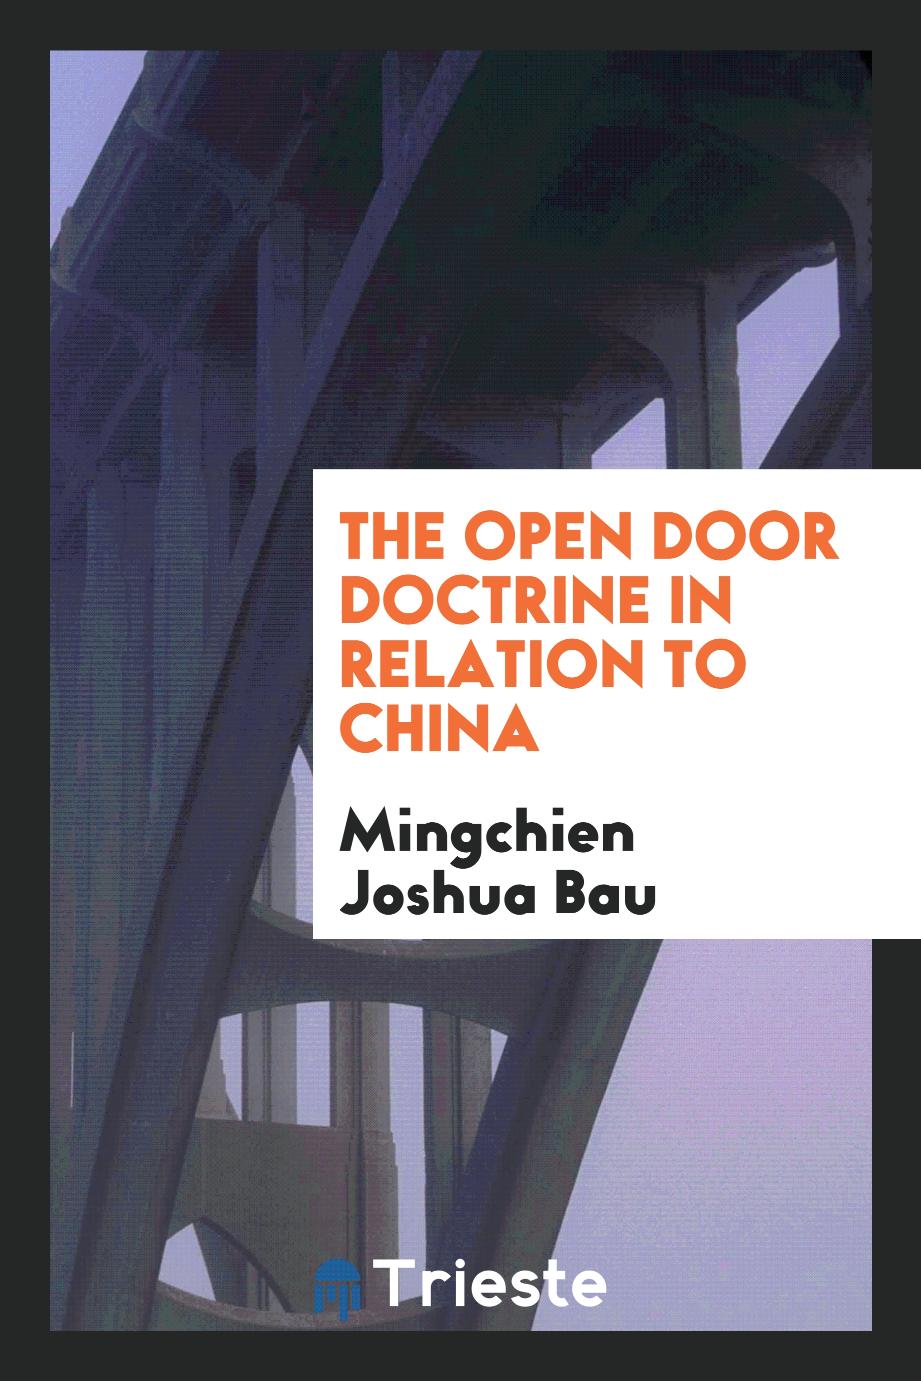 The open door doctrine in relation to China